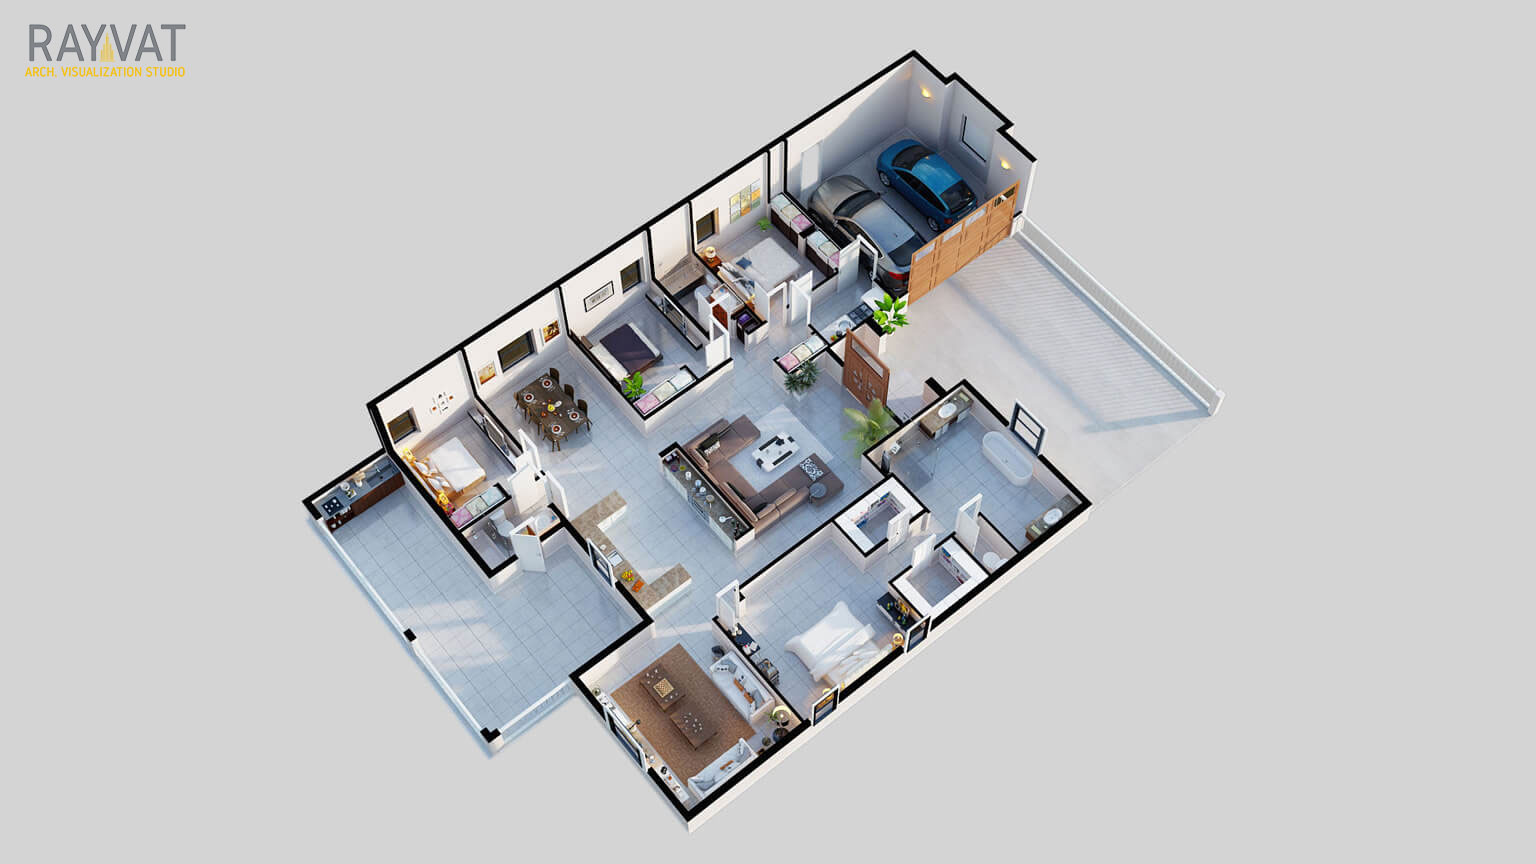 ‘ 3D FLOOR PLAN OF 3 BEDROOM APARTMENT - NEWARK, NEW JERSEY